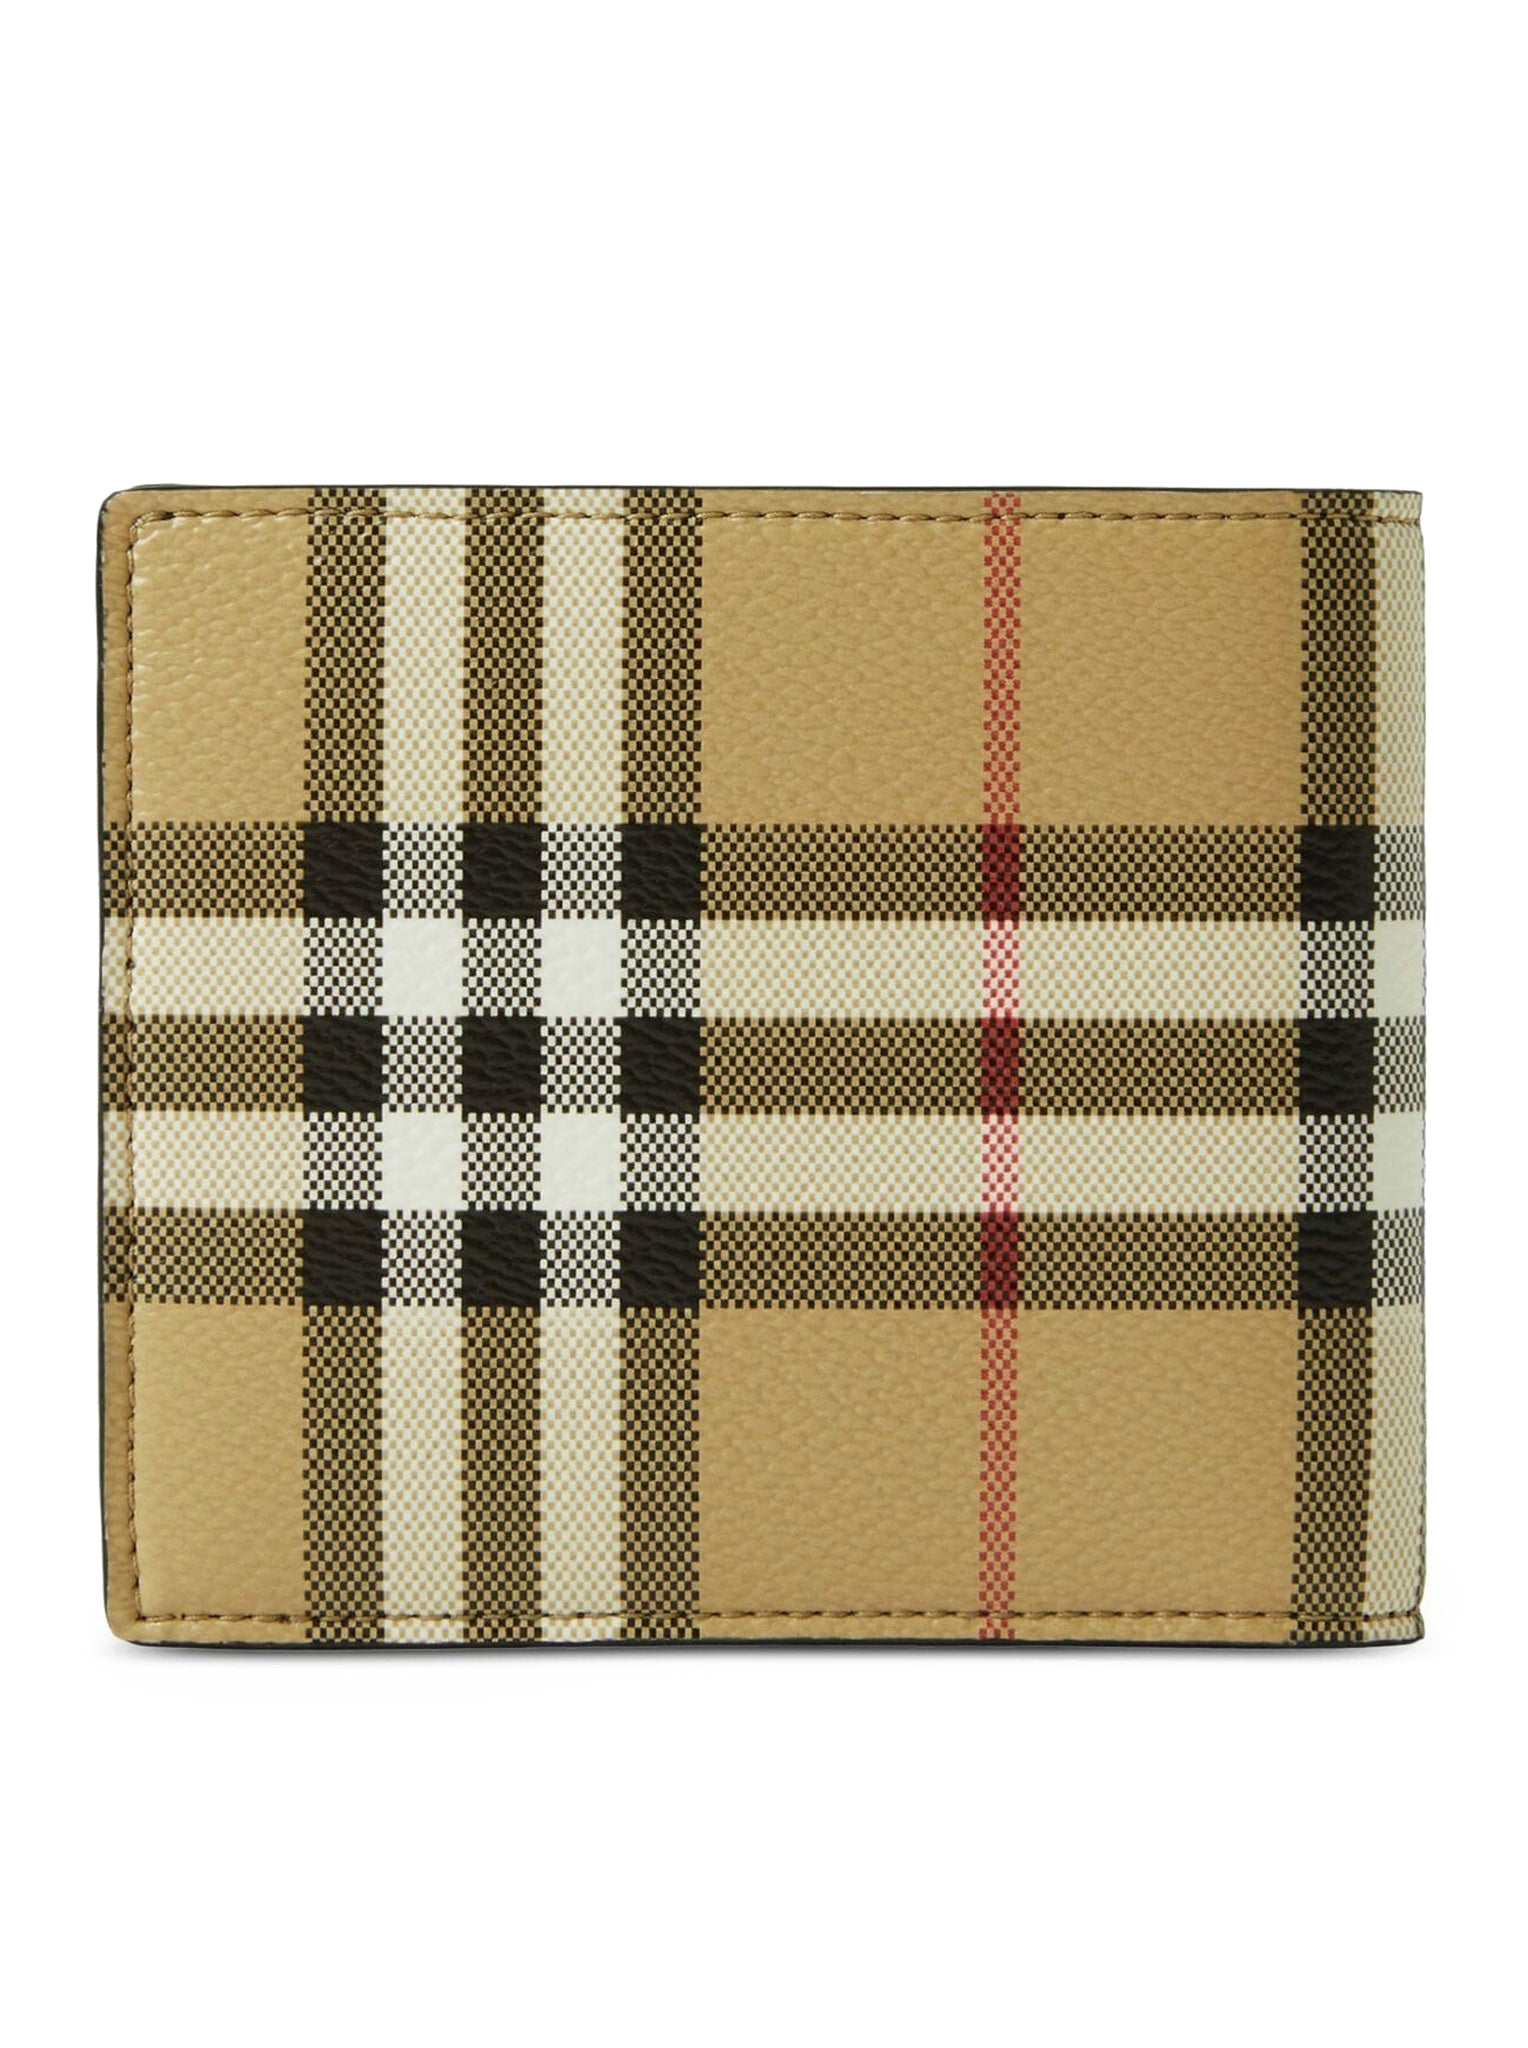 Bi-fold leather wallet